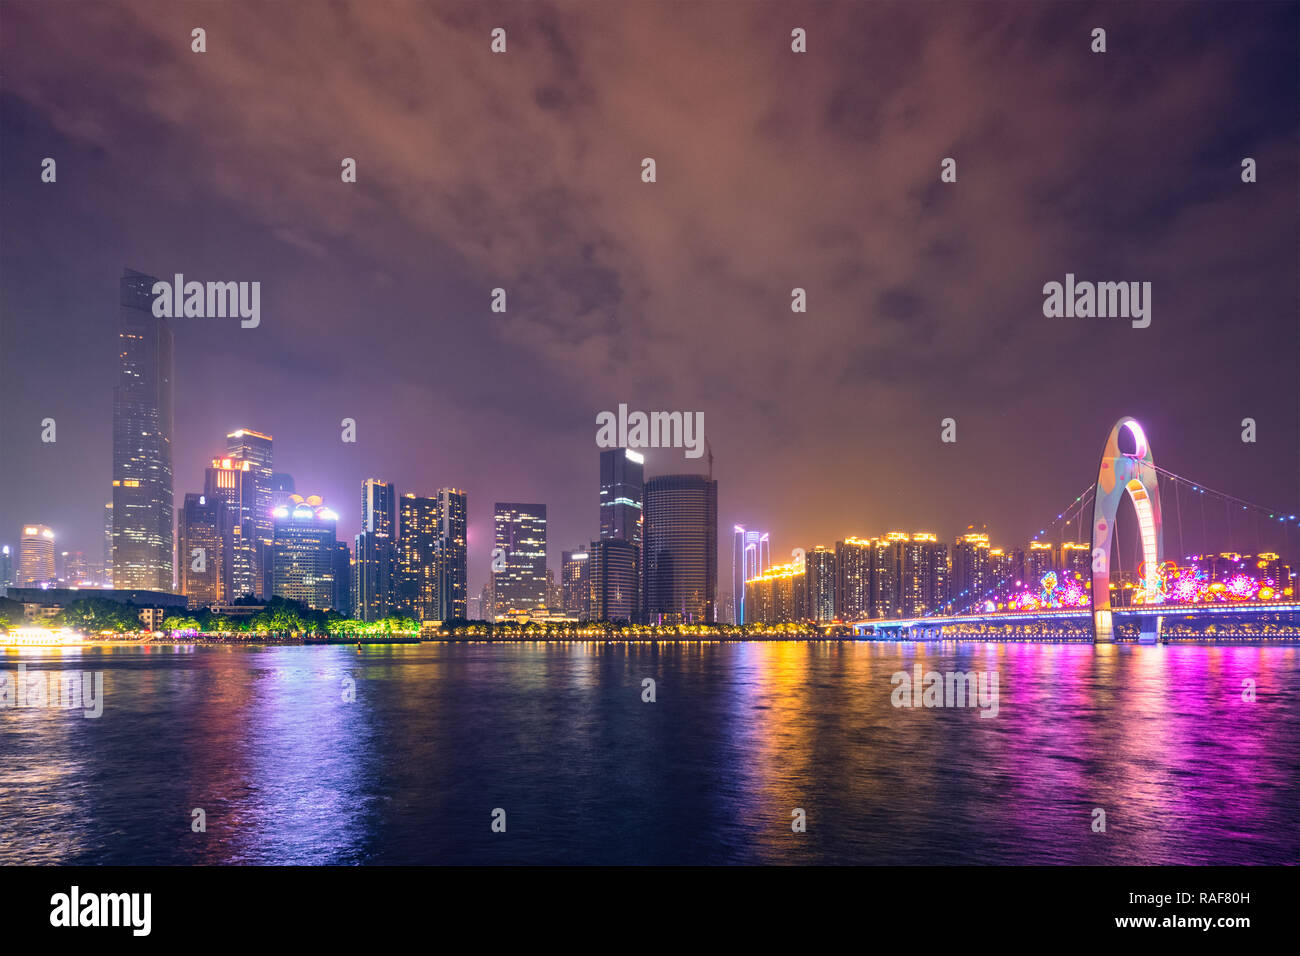 Skyline de Guangzhou. Guangzhou, Chine Banque D'Images